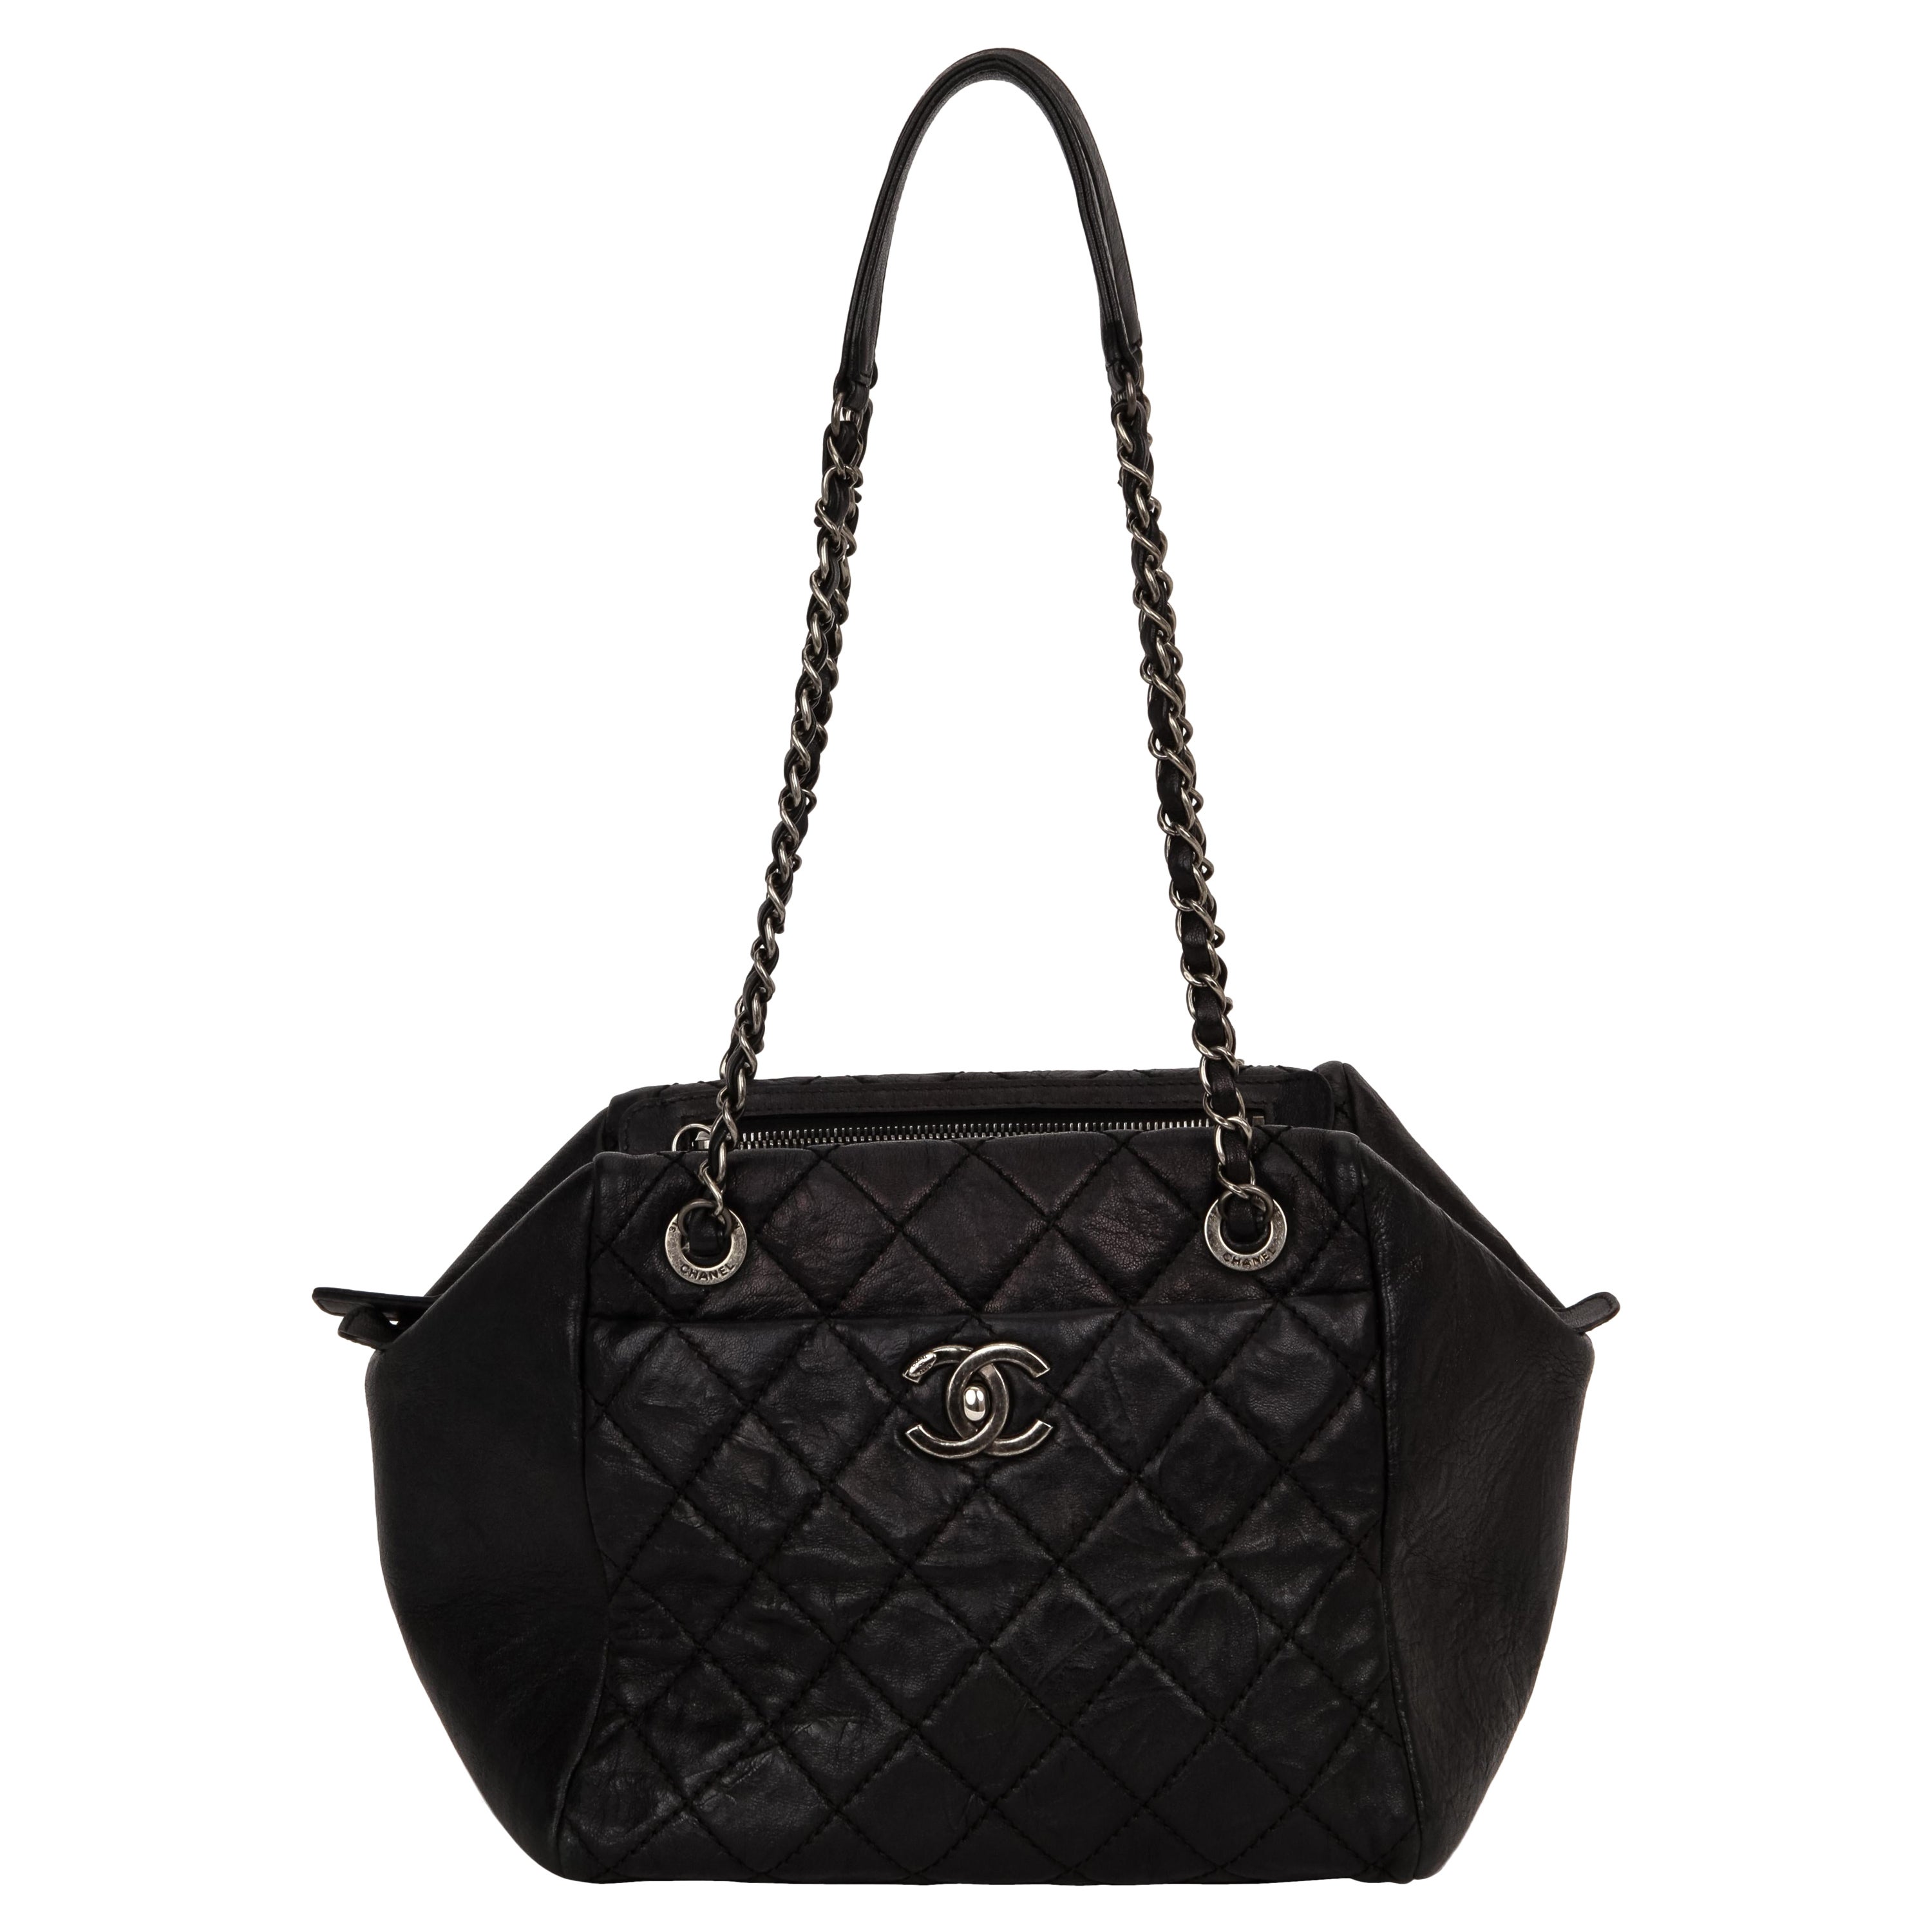 Chanel Black Caviar Double Zip Handbag